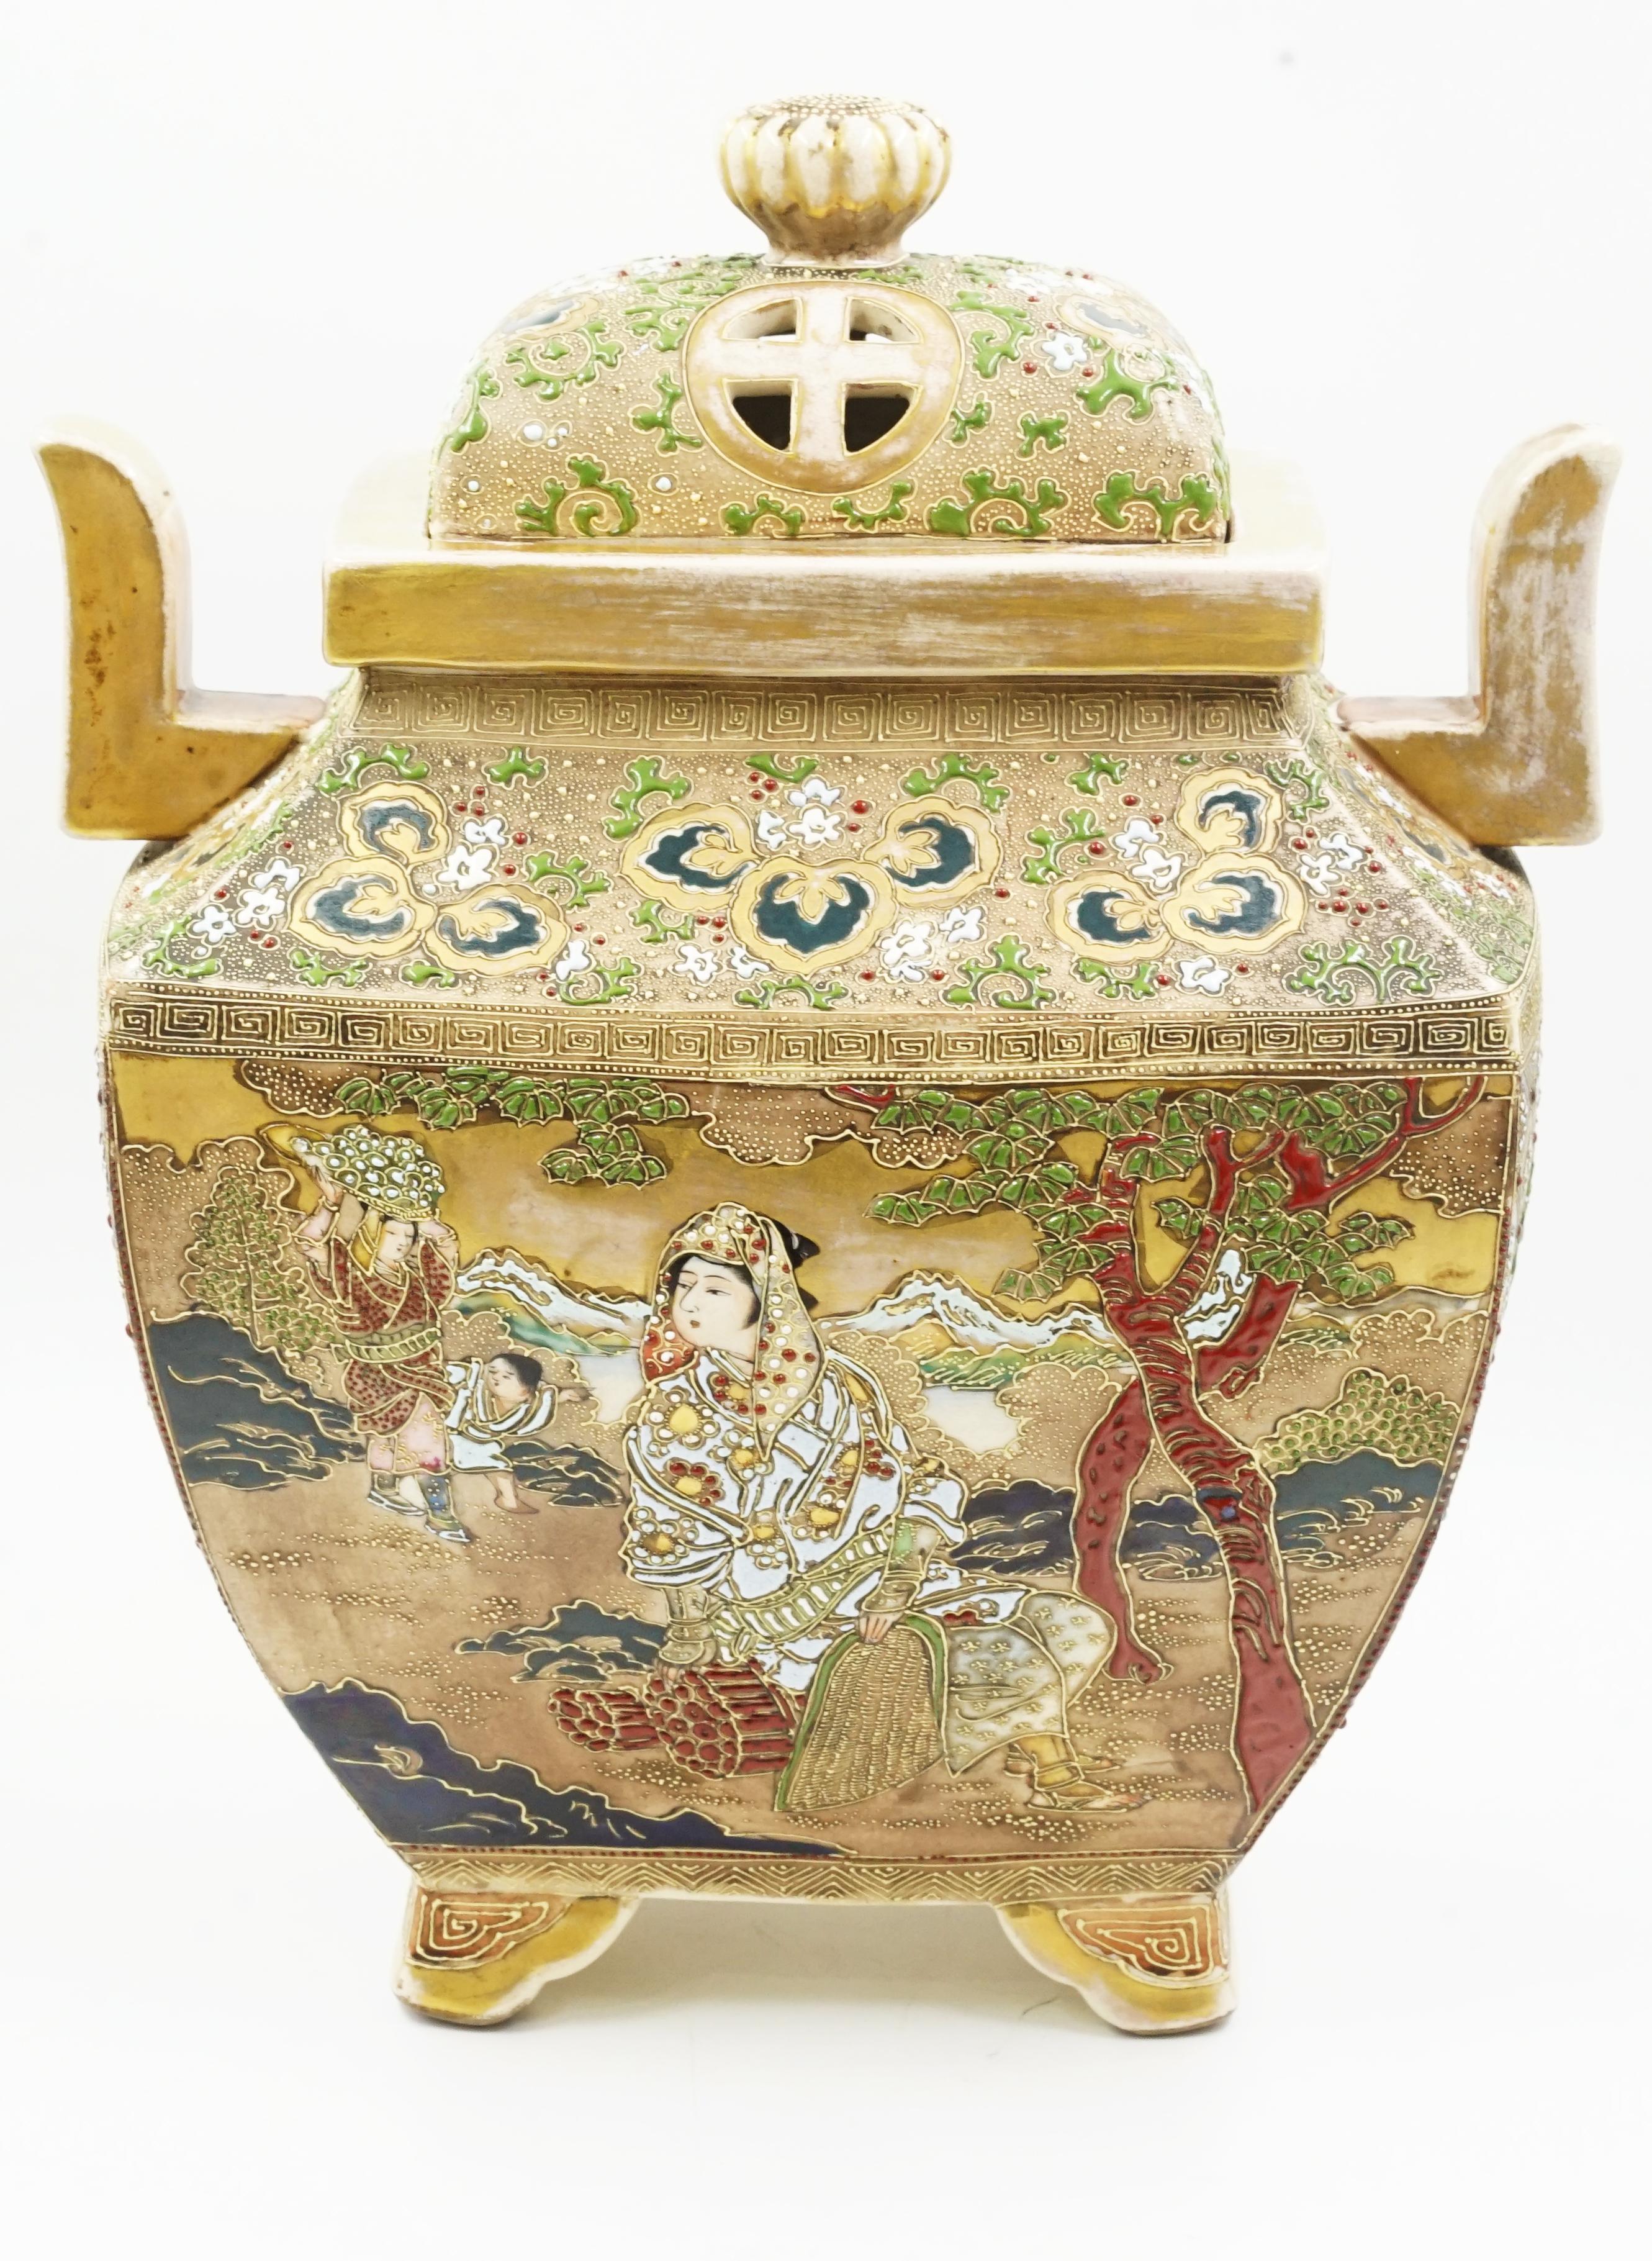 Koro Satsuma Japanische Keramik
Japanische glasierte Keramik in verschiedenen Farben
Meiji-Stil CIRCA 1940 Herkunft Japan
Auf seiner Vorder- und Rückseite sind traditionelle Bilder gemalt.
Der Zweck dieser Keramik war es, Weihrauch zu verbrennen.
Es